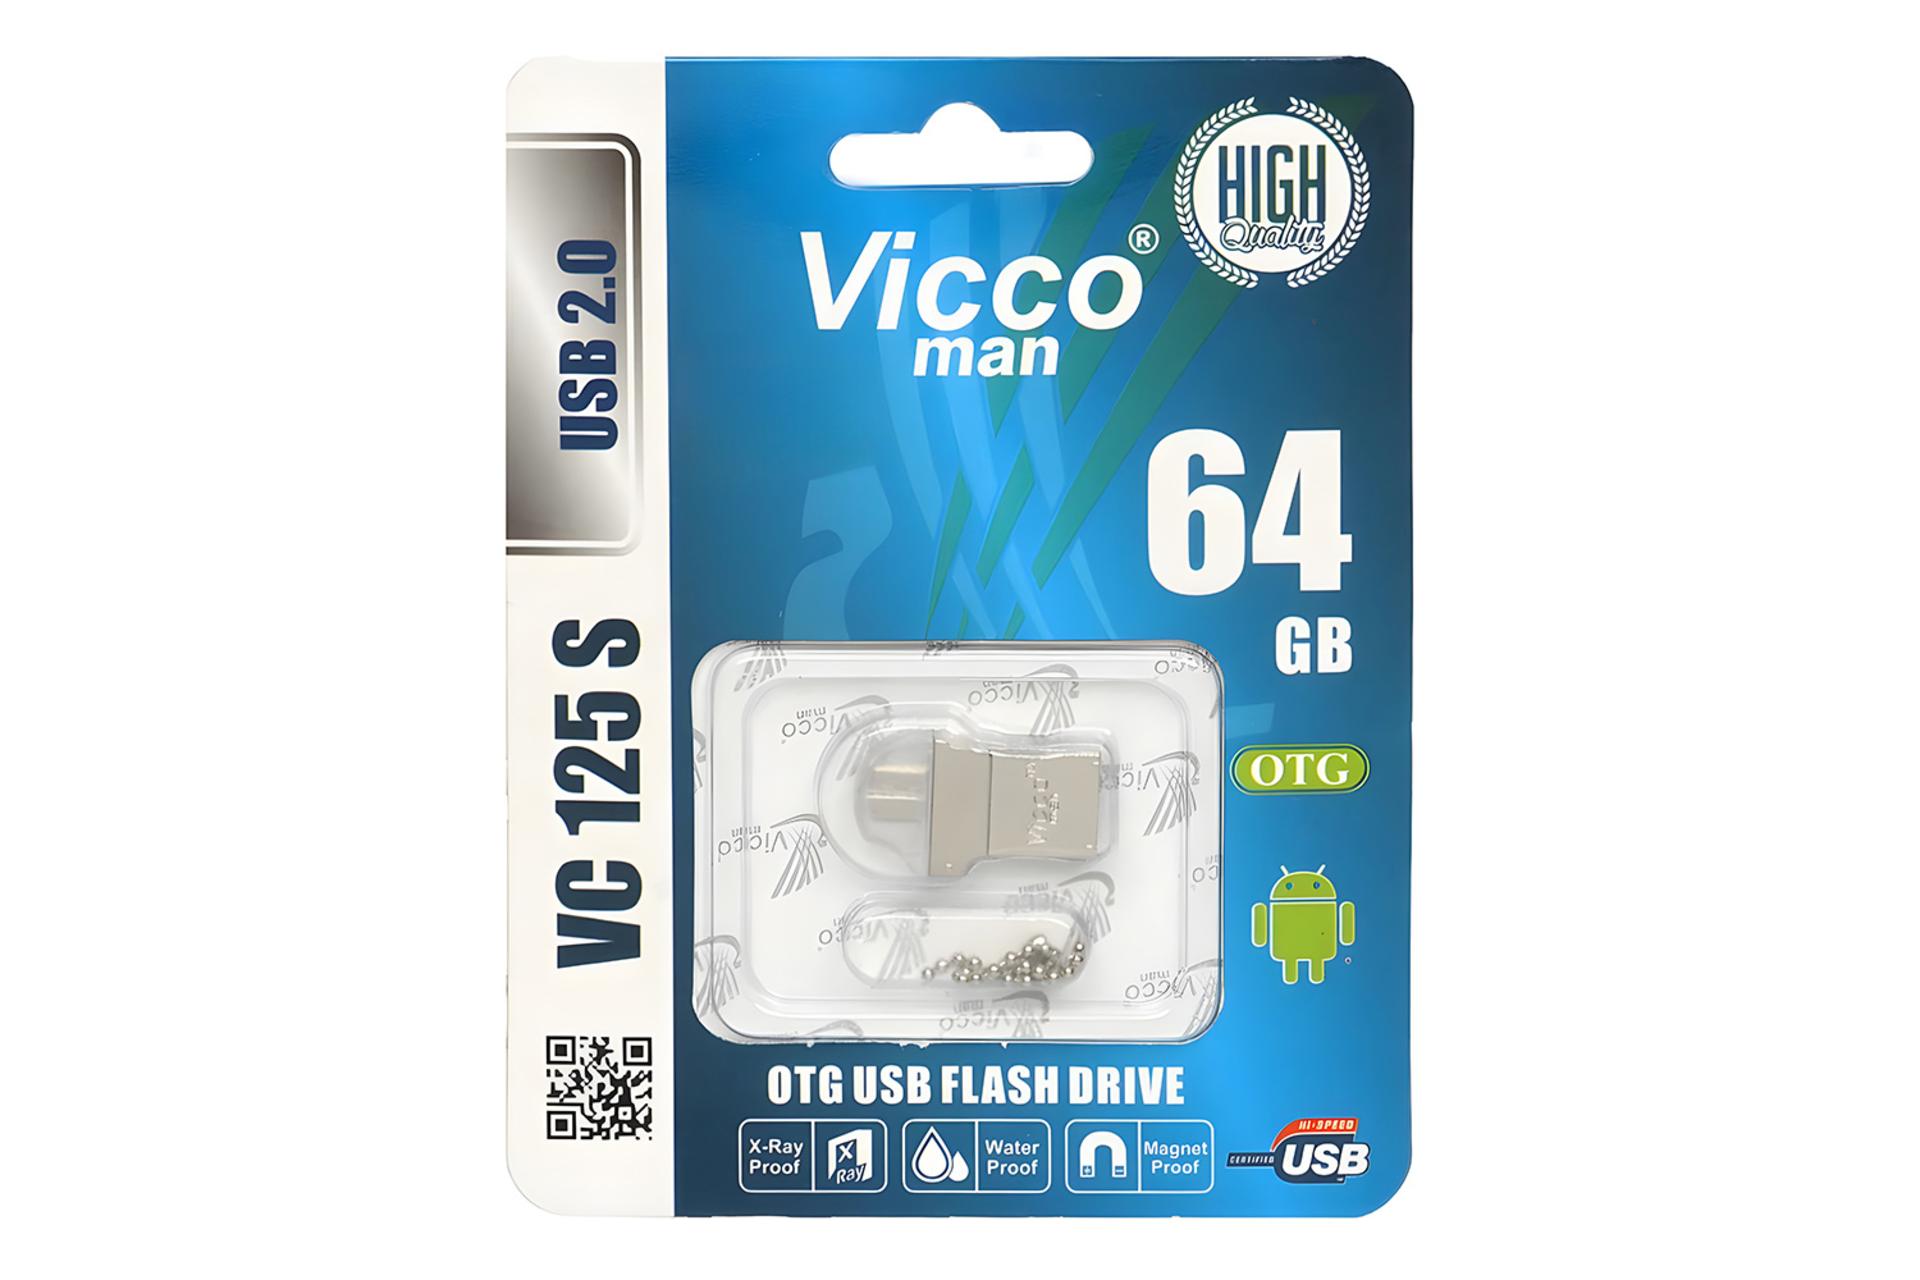 جعبه فلش مموری ویکومن Viccoman VC125 S 64GB USB 2.0